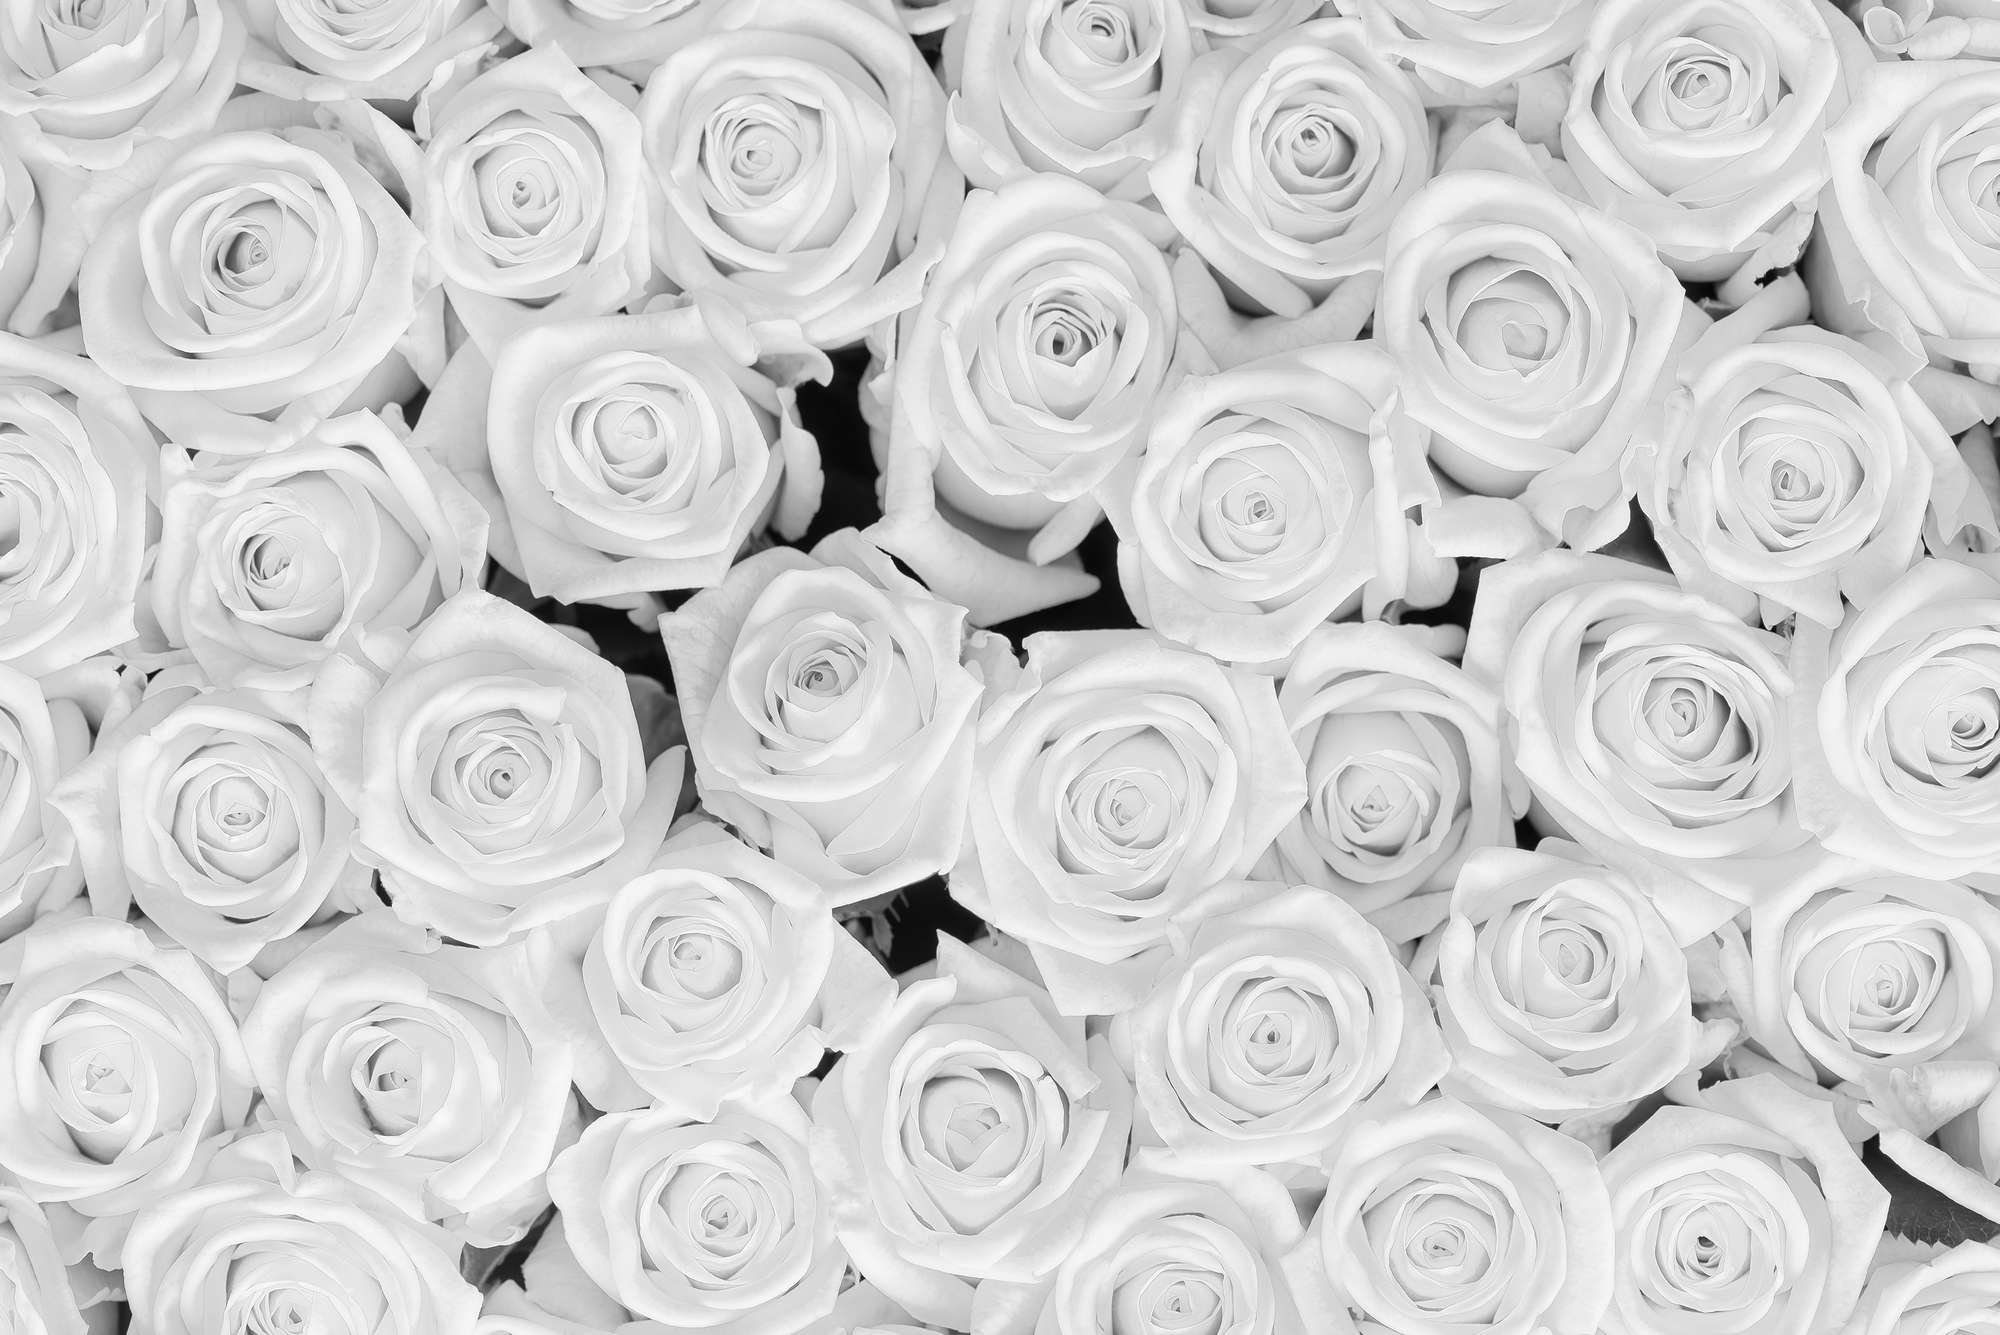             Papier peint végétal Roses blanches sur intissé nacré lisse
        